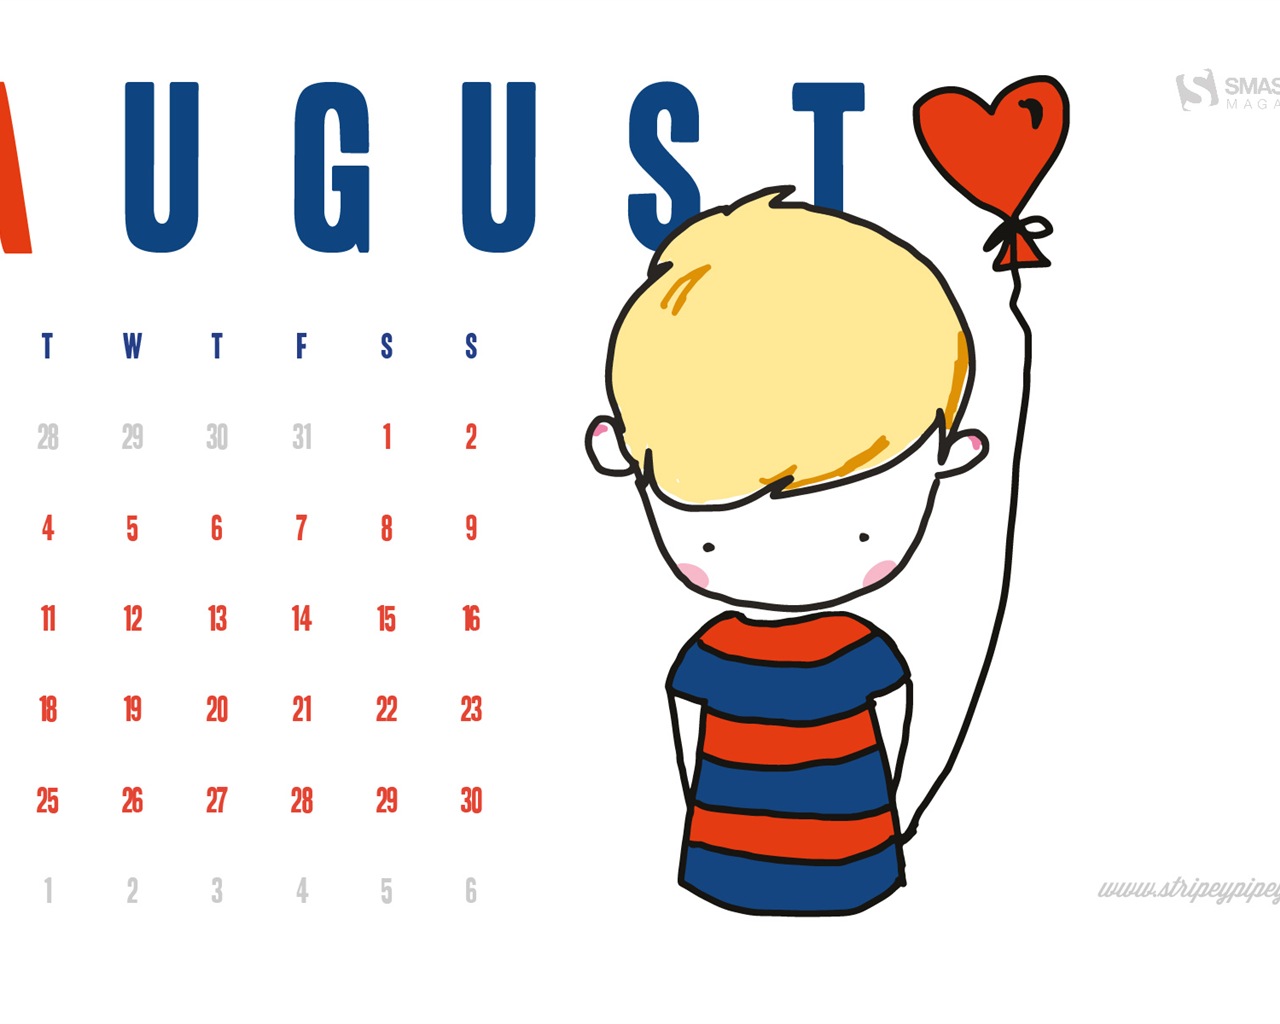 August 2015 calendar wallpaper (2) #10 - 1280x1024